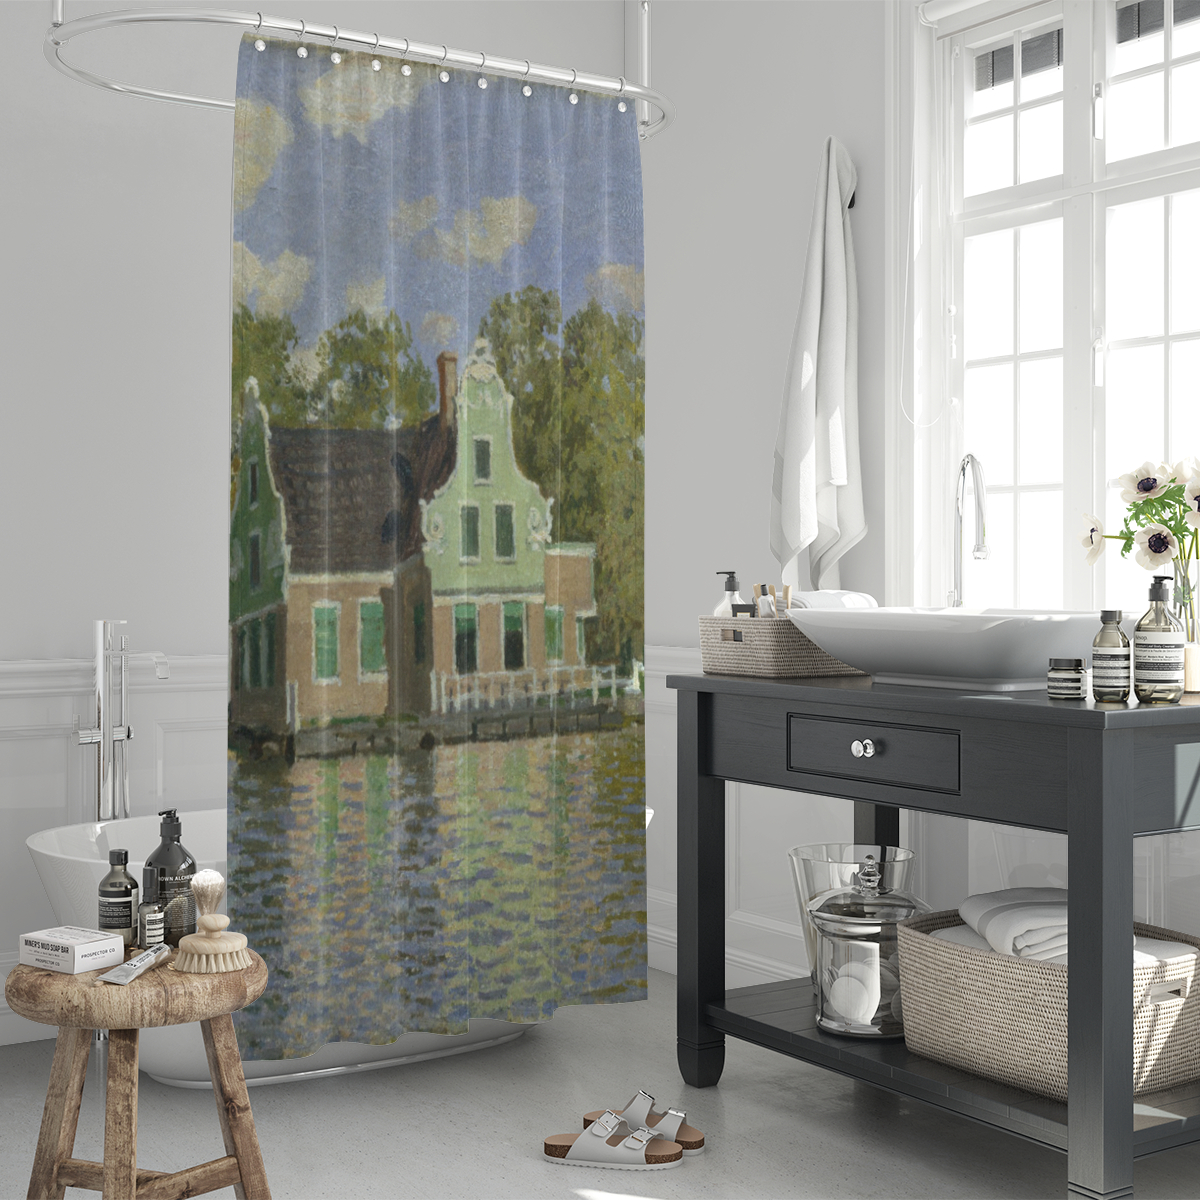 Duschvorhang Monet - Häuser am Wasser